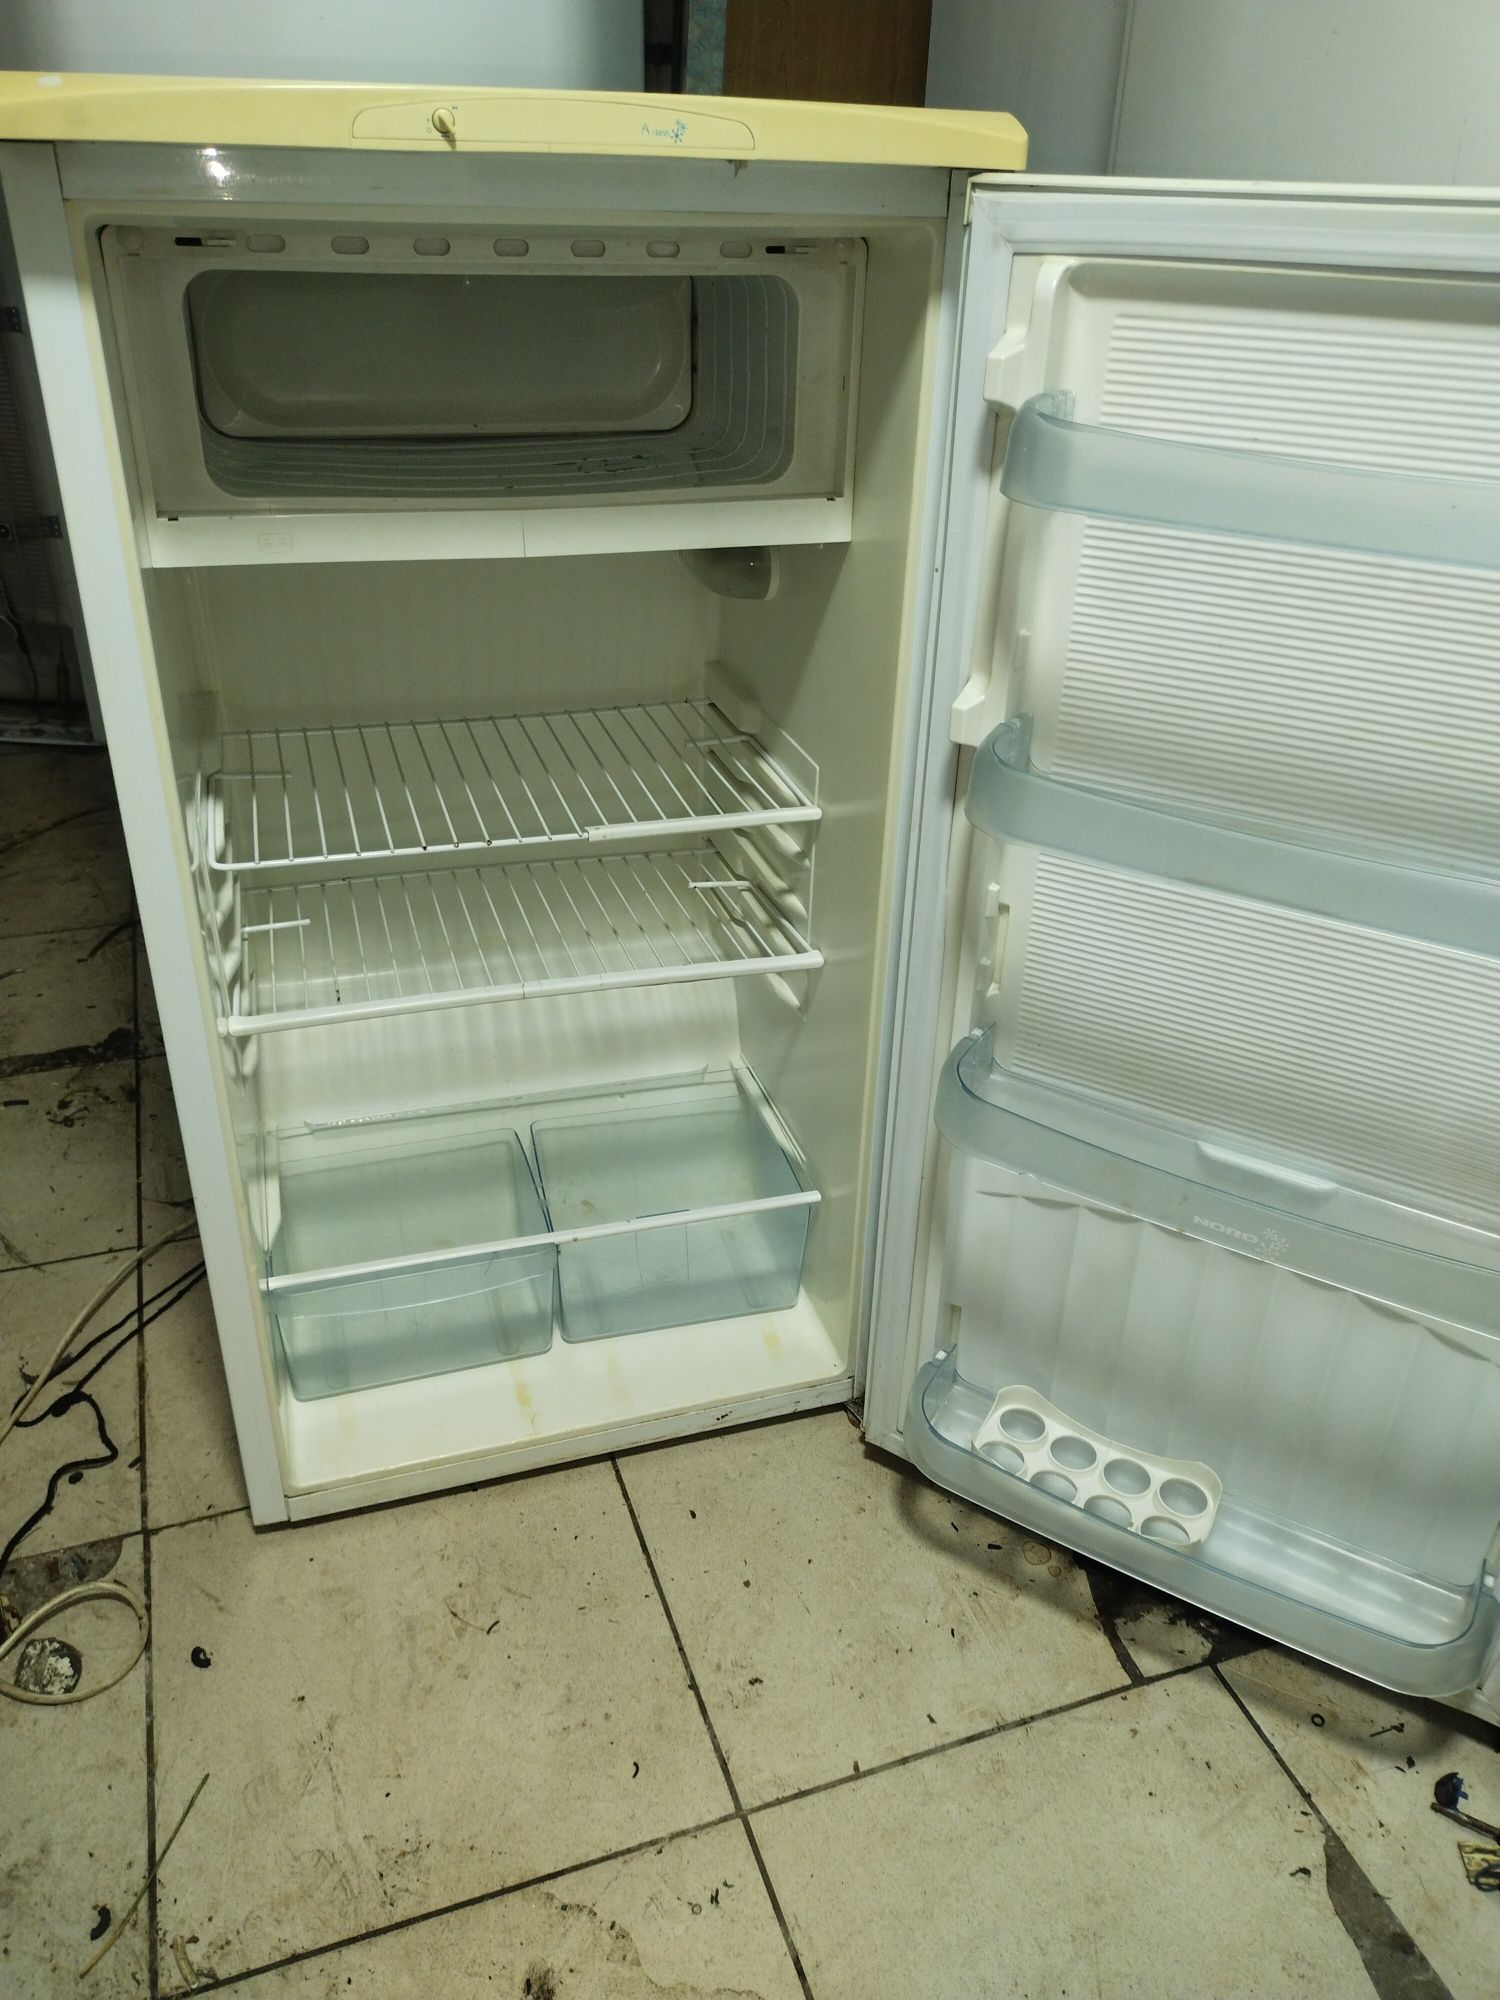 Рабочий холодильник